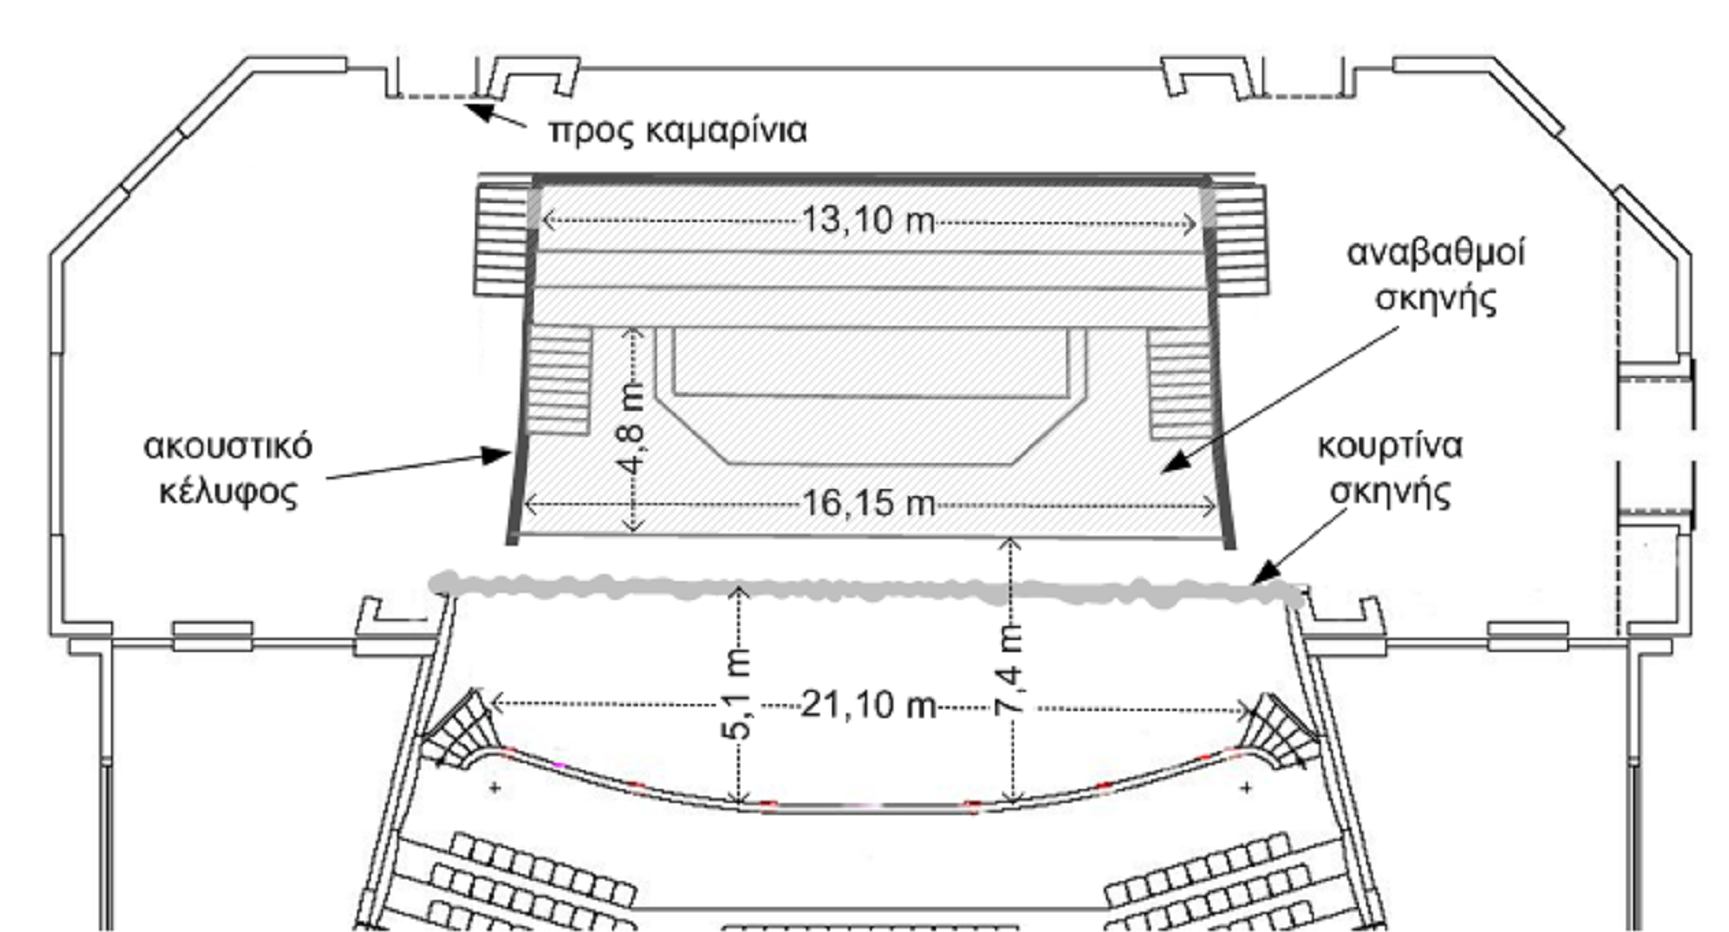 Σχήμα 5 Κάτοψη του χώρου της σκηνής και του ακουστικού κελύφους με τις βασικές διαστάσεις. Ε2. Σκοπός της διπλωματικής εργασίας.